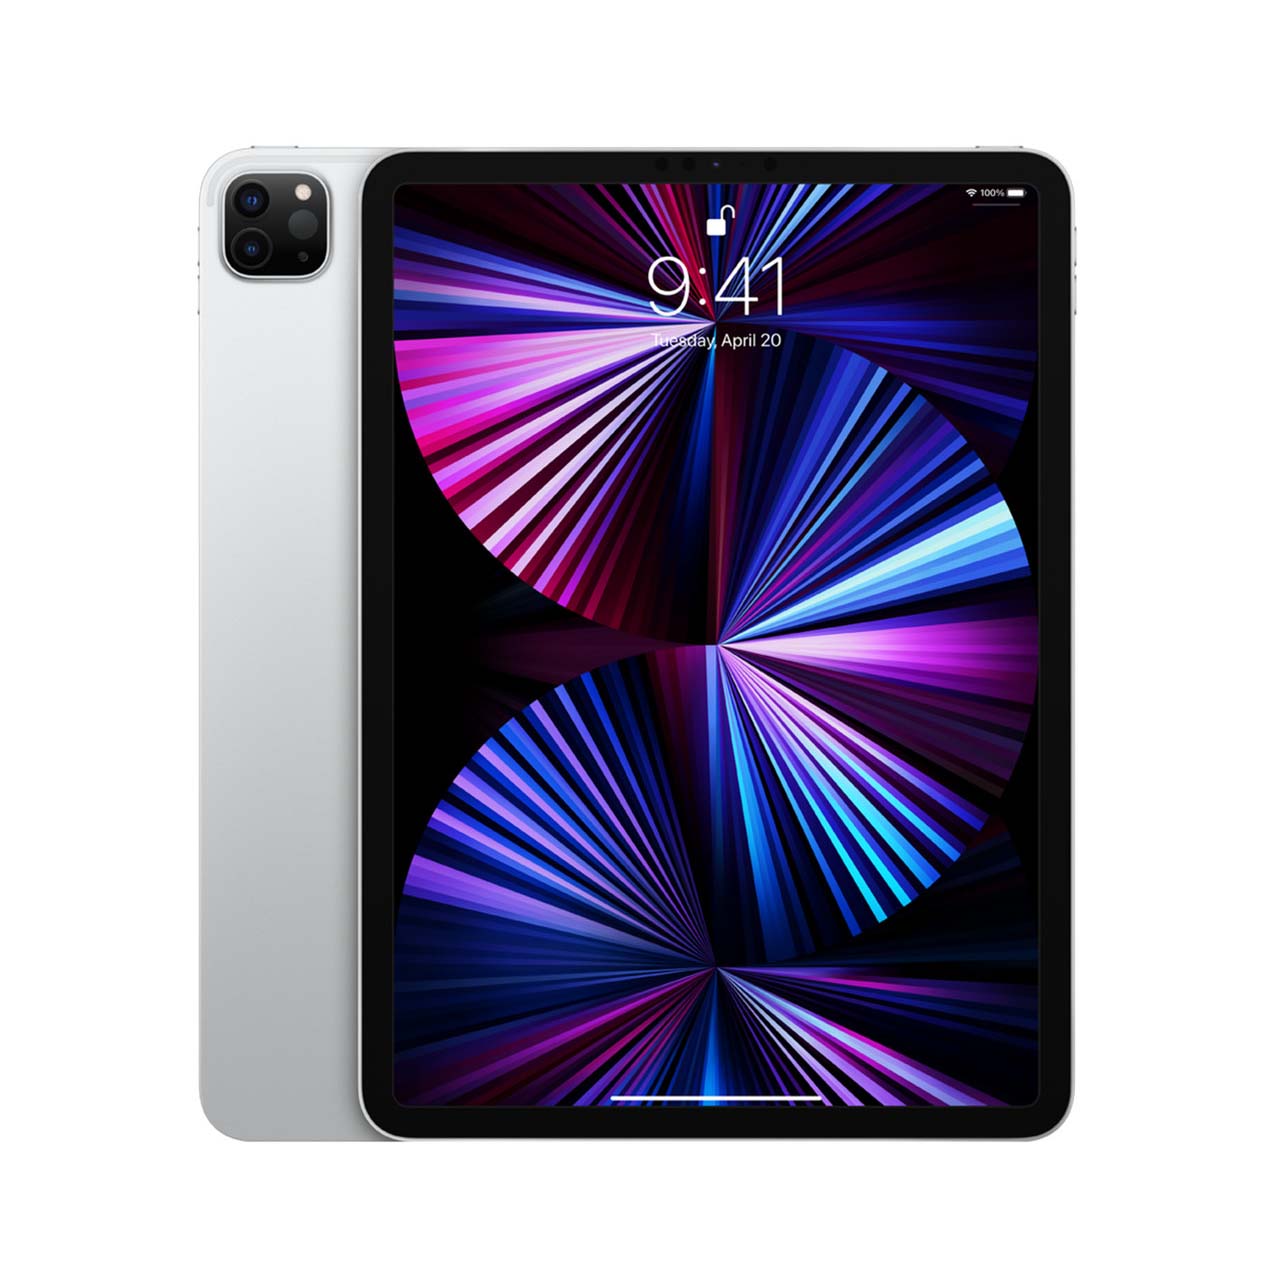 iPad Pro 11 inch 4th Generation 128GB Silver Wifi + Cellular MP563LL/A (A)